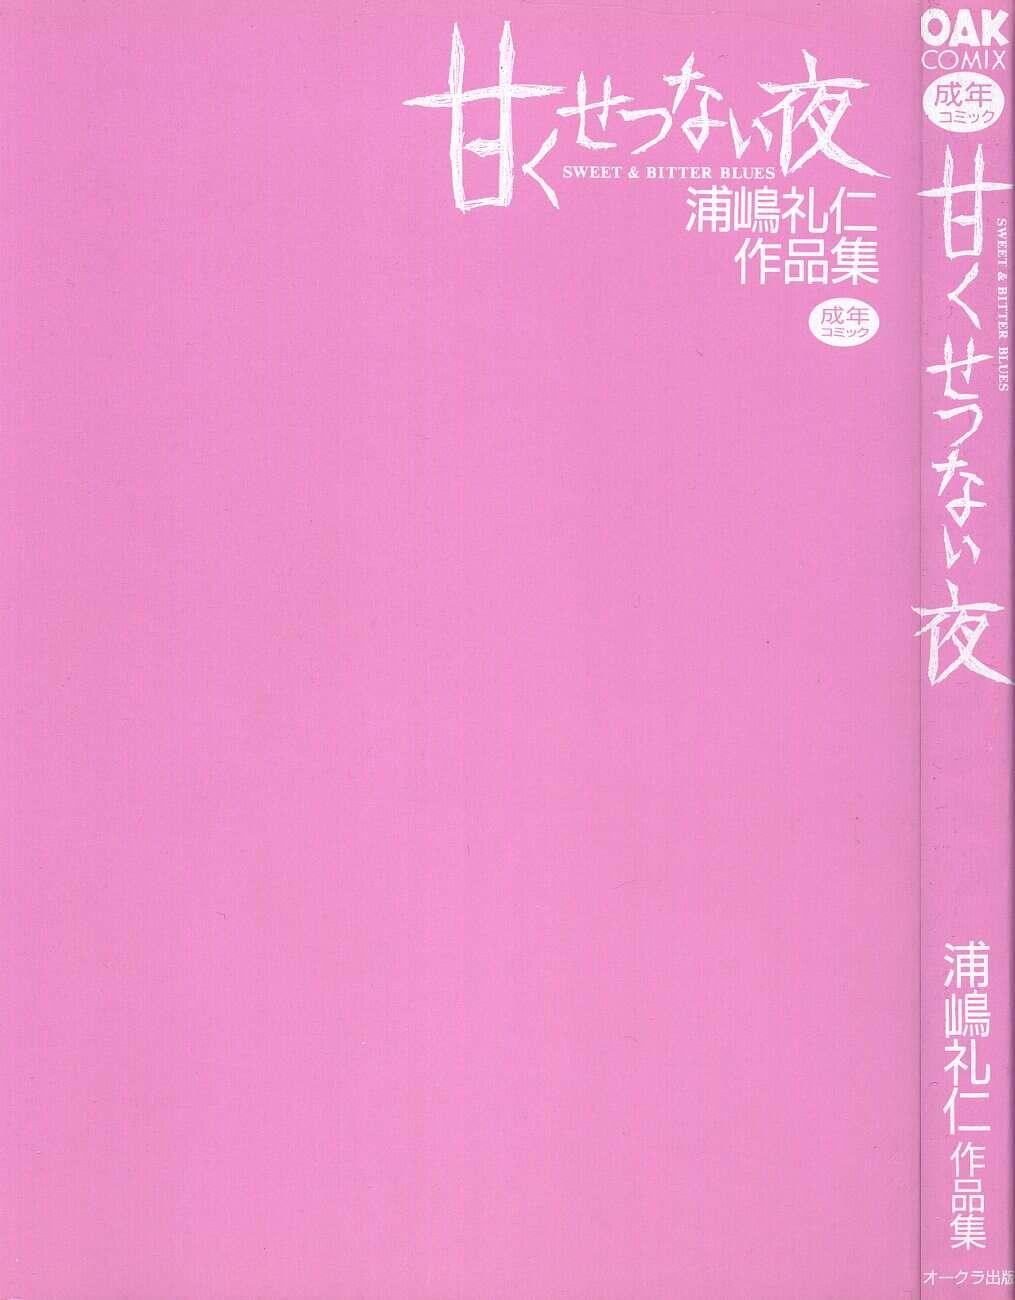 Amaku Setsunai Yoru - SWEET & BITTER BLUES 4